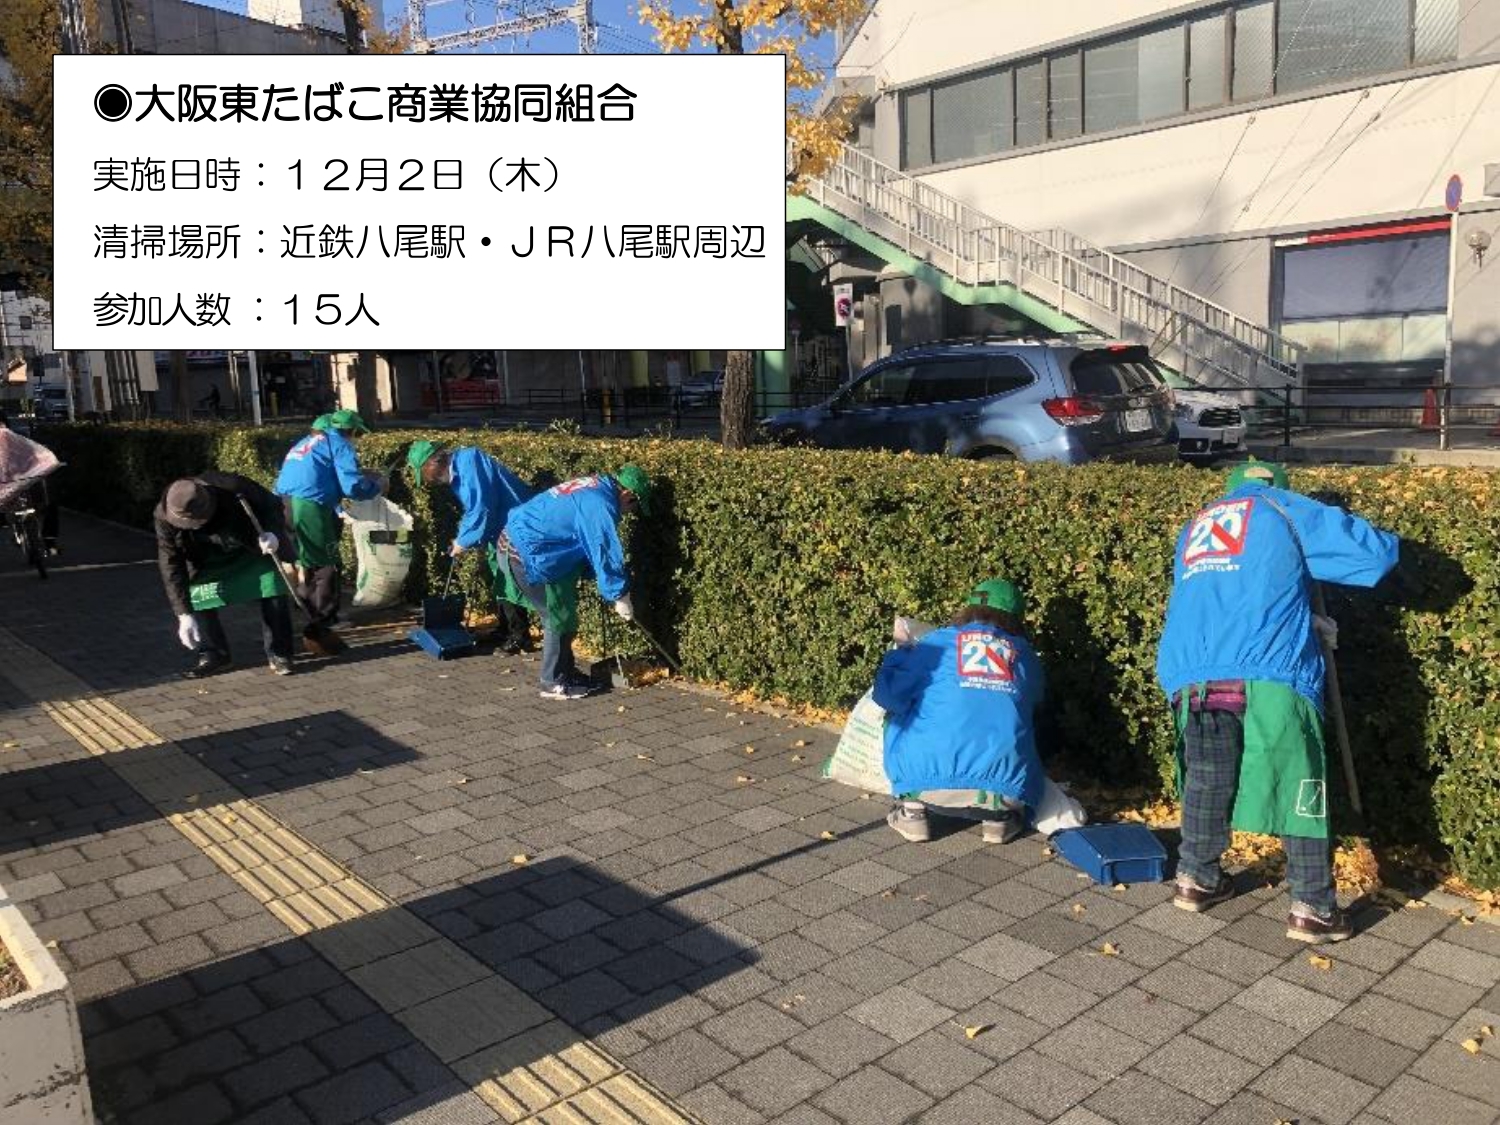 大阪東たばこ商業協同組合の清掃画像です。